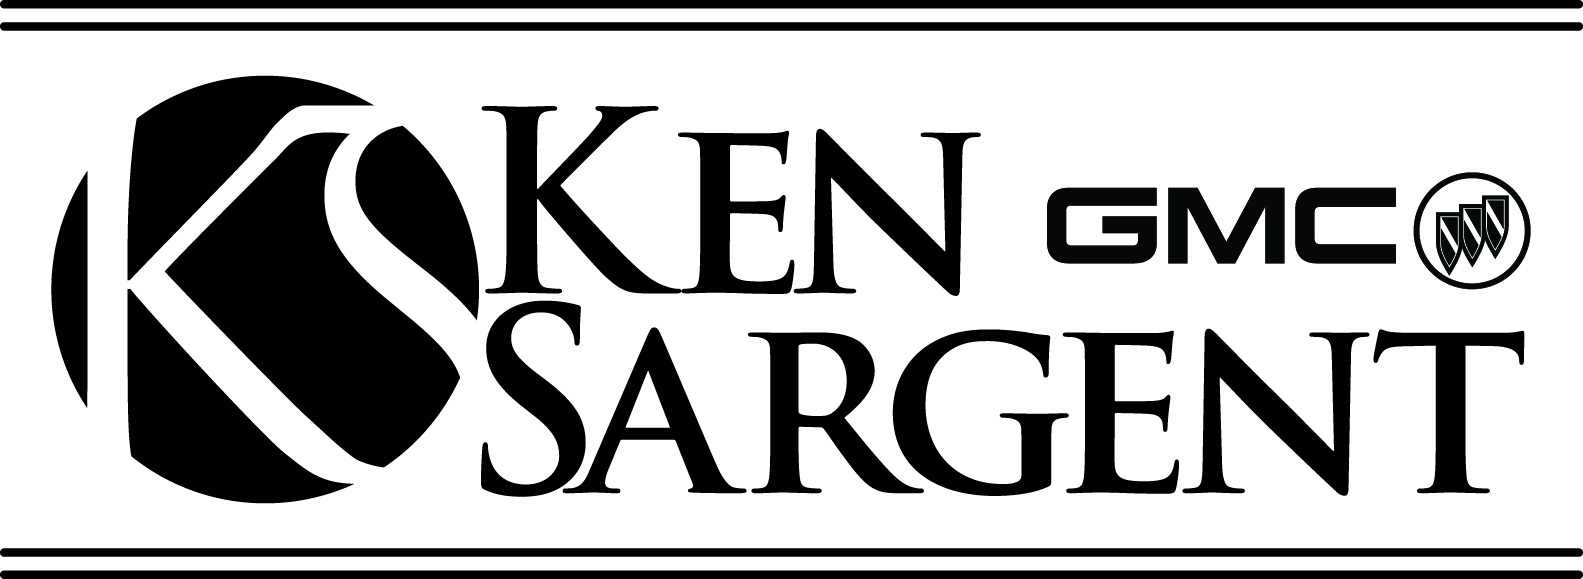 Ken Sargent